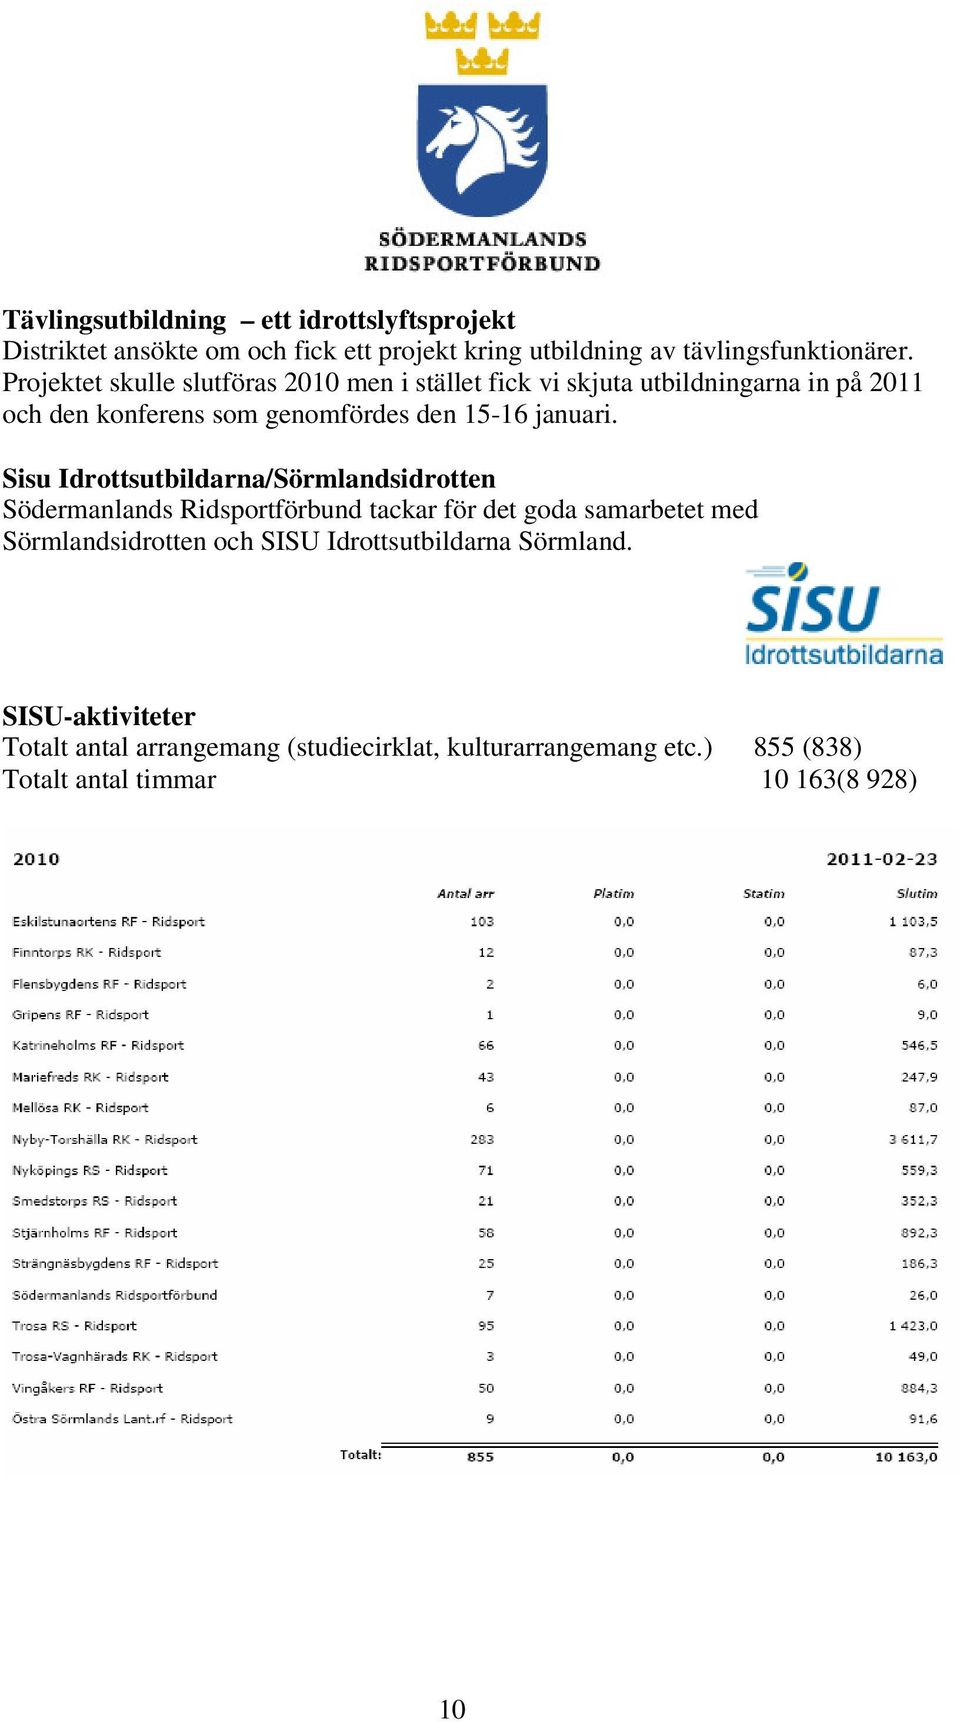 Sisu Idrottsutbildarna/Sörmlandsidrotten Södermanlands Ridsportförbund tackar för det goda samarbetet med Sörmlandsidrotten och SISU